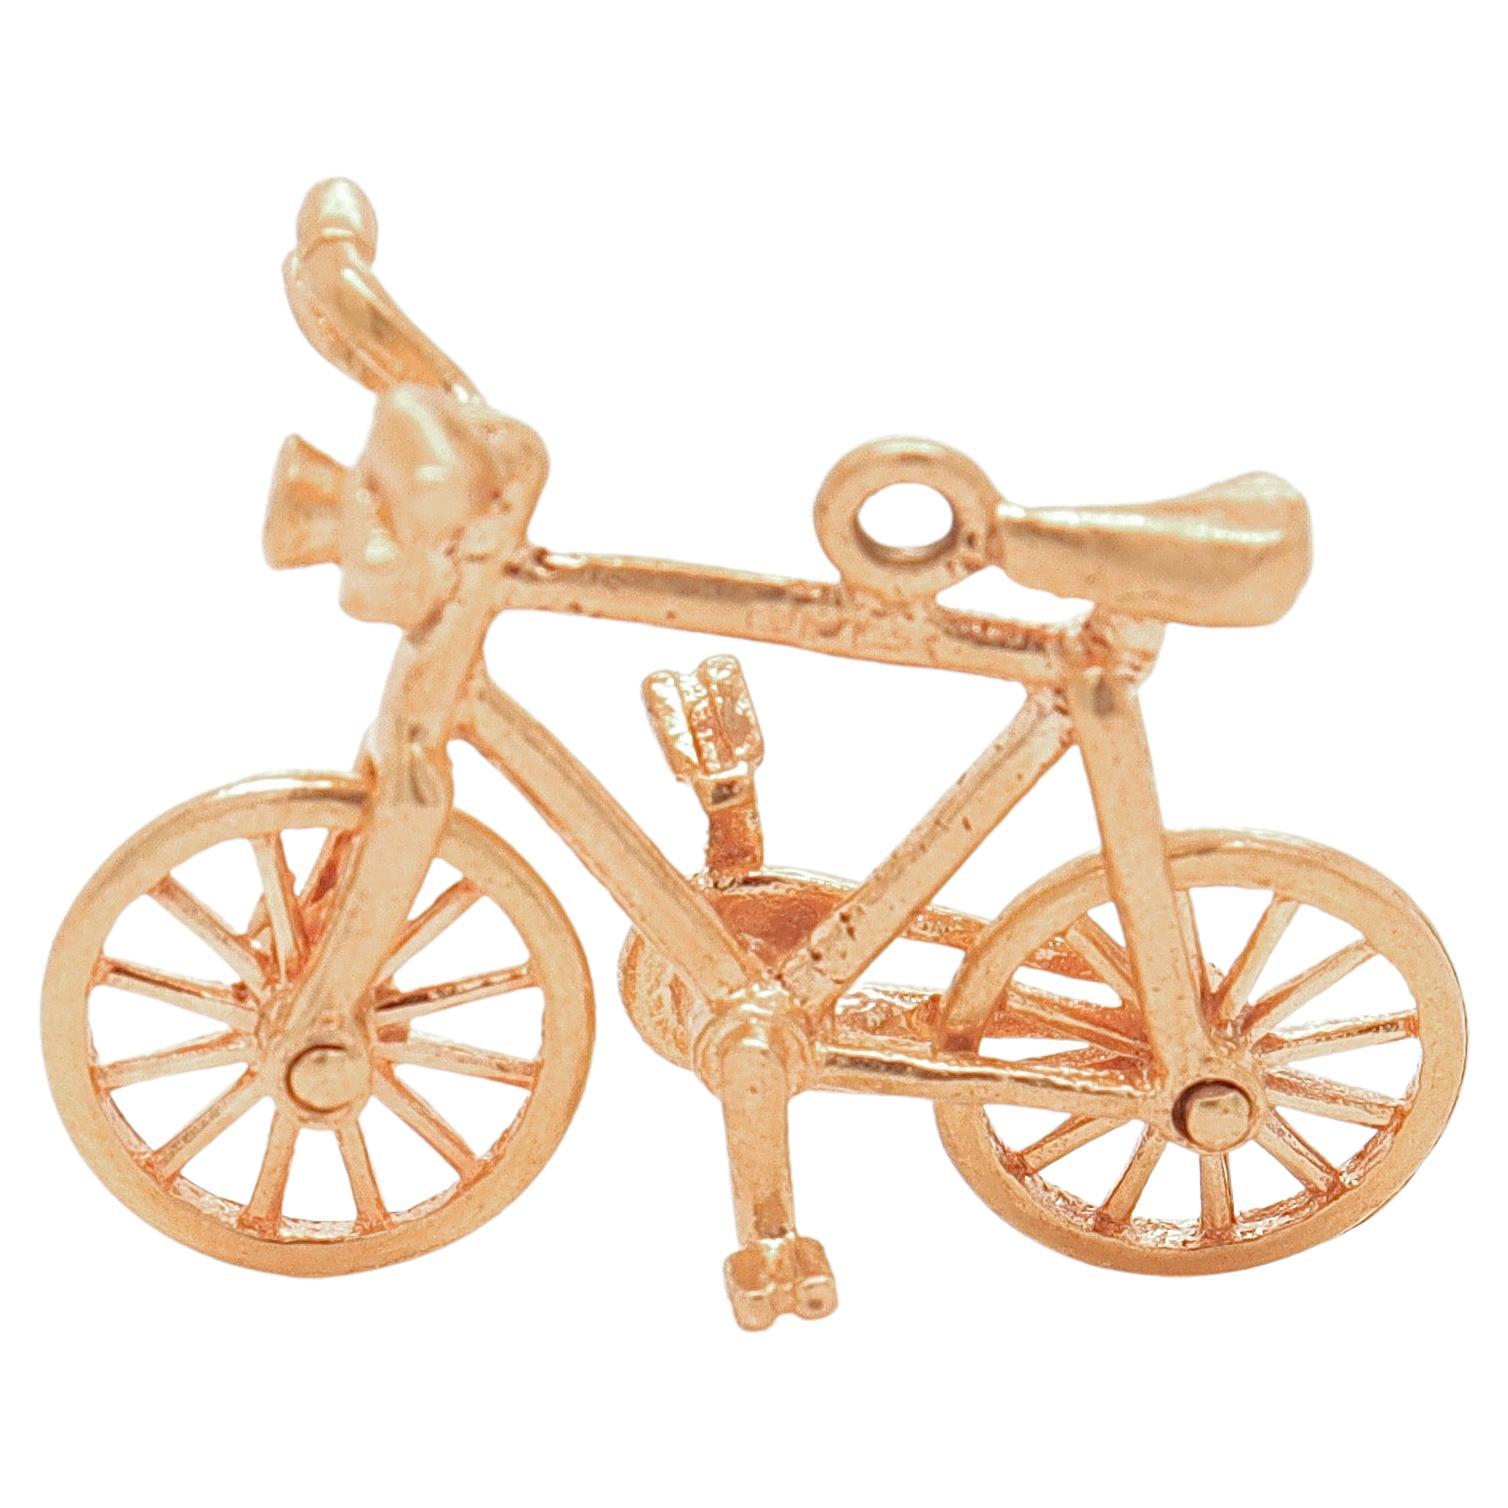 Vintage 14K Gold Figural Bicycle Charm for a Bracelet